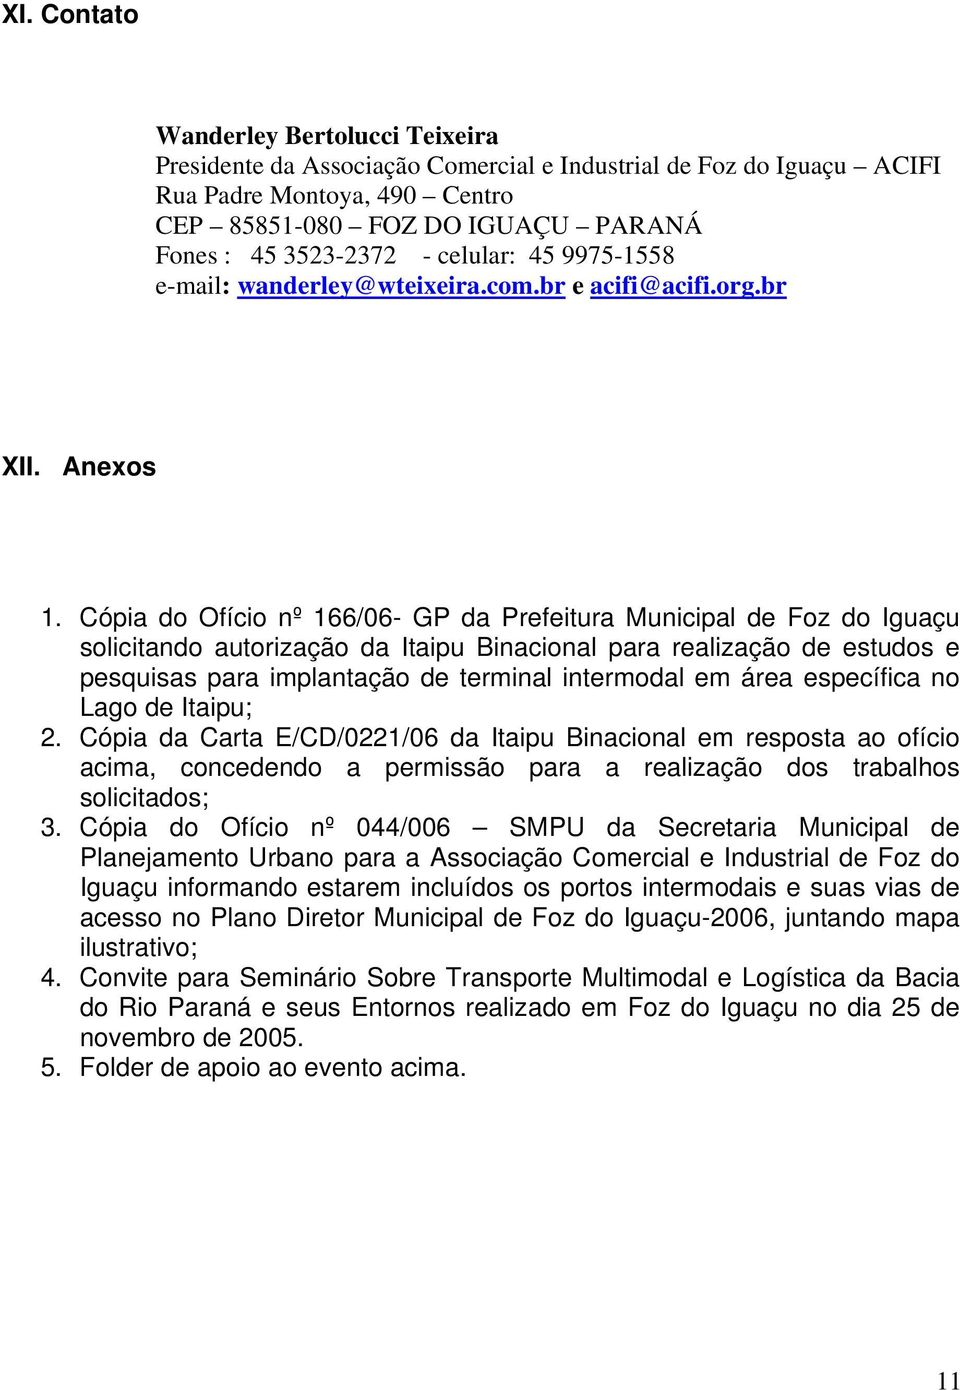 Cópia do Ofício nº 166/06- GP da Prefeitura Municipal de Foz do Iguaçu solicitando autorização da Itaipu Binacional para realização de estudos e pesquisas para implantação de terminal intermodal em